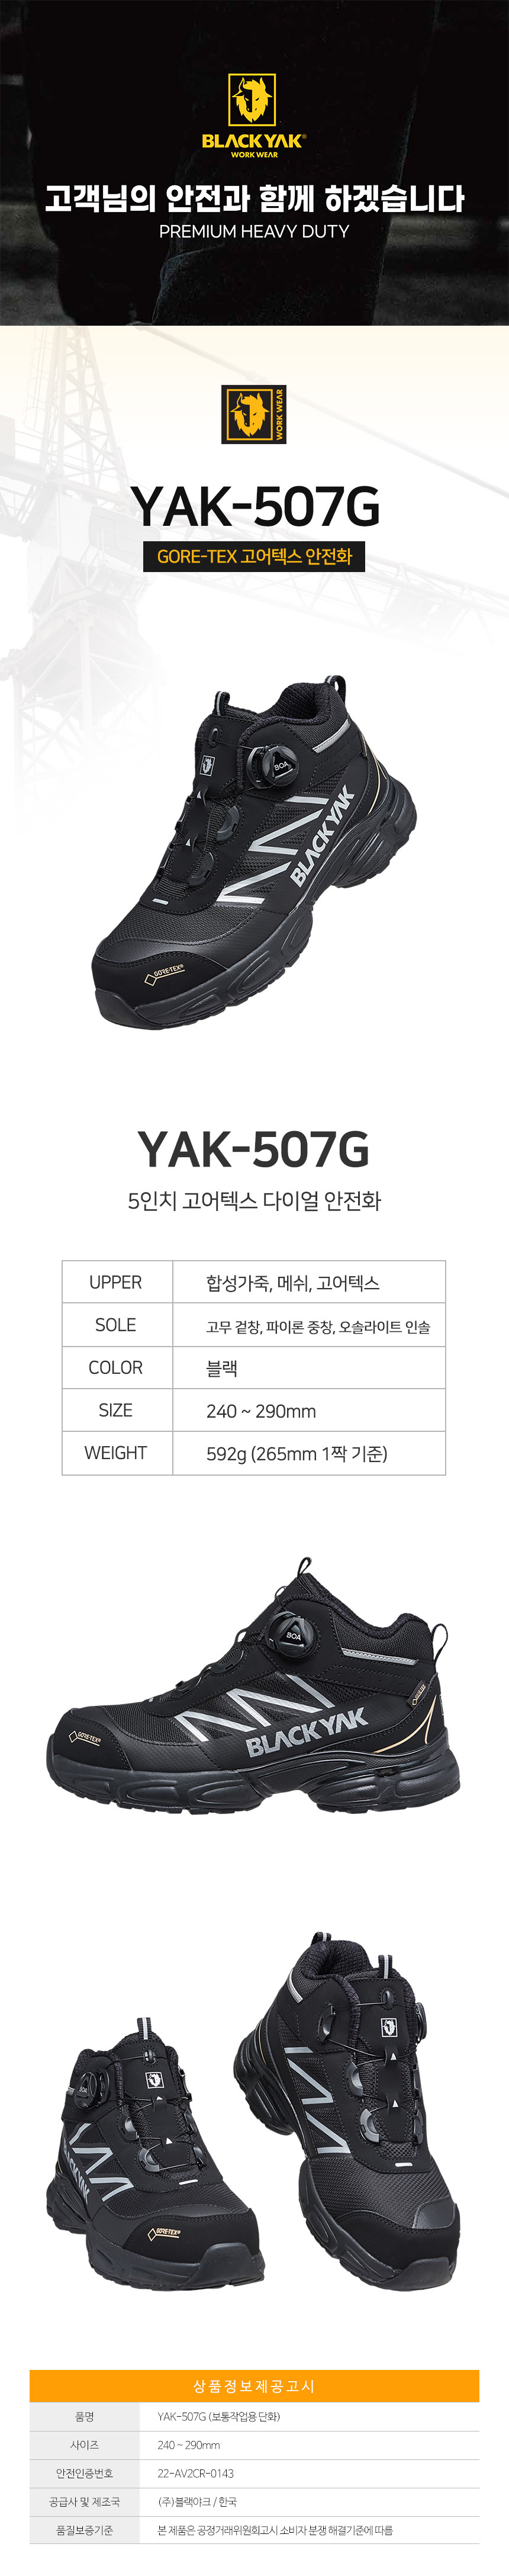 YAK-507G_d01.jpg